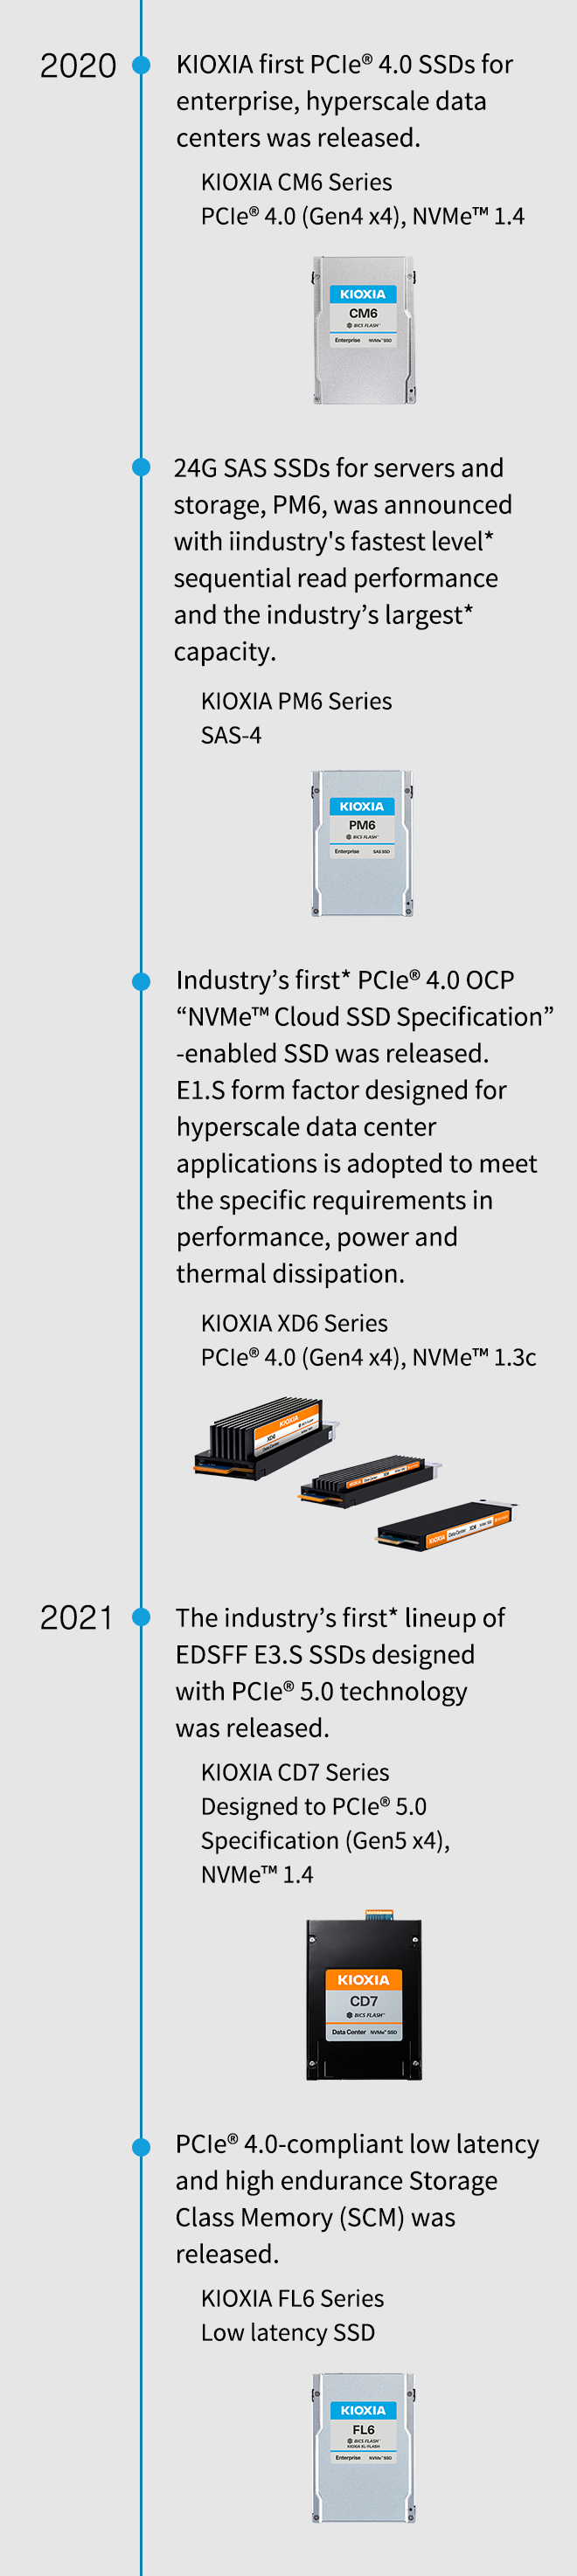 2020. KIOXIA ist die erste PCIe® 4.0 SSD für Unternehmen und Hyperscale-Rechenzentren. KIOXIA CM6-Serie PCIe® 4.0 (Gen4 x4), NVMe™ 1.4. 24G SAS SSDs für Server und Speicher, PM6, wurden mit der branchenweit schnellsten* sequenziellen Leseleistung und der größten* Kapazität der Branche angekündigt. KIOXIA PM6-Serie SAS-4. Kioxia stellt die branchenweit erste SSD mit Unterstützung der PCIe® 4.0 OCP „NVMe™ Cloud Specification“ vor. Der E1.S-Formfaktor, der für Hyperscale-Anwendungen in Rechenzentren entwickelt wurde, erfüllt die spezifischen Anforderungen an Leistung und Wärmeableitung. KIOXIA XD6-Serie PCIe® 4.0 (Gen4 x4), NVMe™ 1.3c. 2021. Die erste* Produktreihe von EDSFF E3.S SSDs mit PCIe® 5.0-Technologie wurde veröffentlicht. KIOXIA CD7-Serie entwickelt nach PCIe® 5.0-Spezifikation (Gen5 x4), NVMe™ 1.4. PCIe® 4.0-konformer Storage Class Memory (SCM) mit geringer Latenz und hoher Dauerhaltbarkeit wurde veröffentlicht. KIOXIA FL6-Serie SSD mit niedriger Latenz